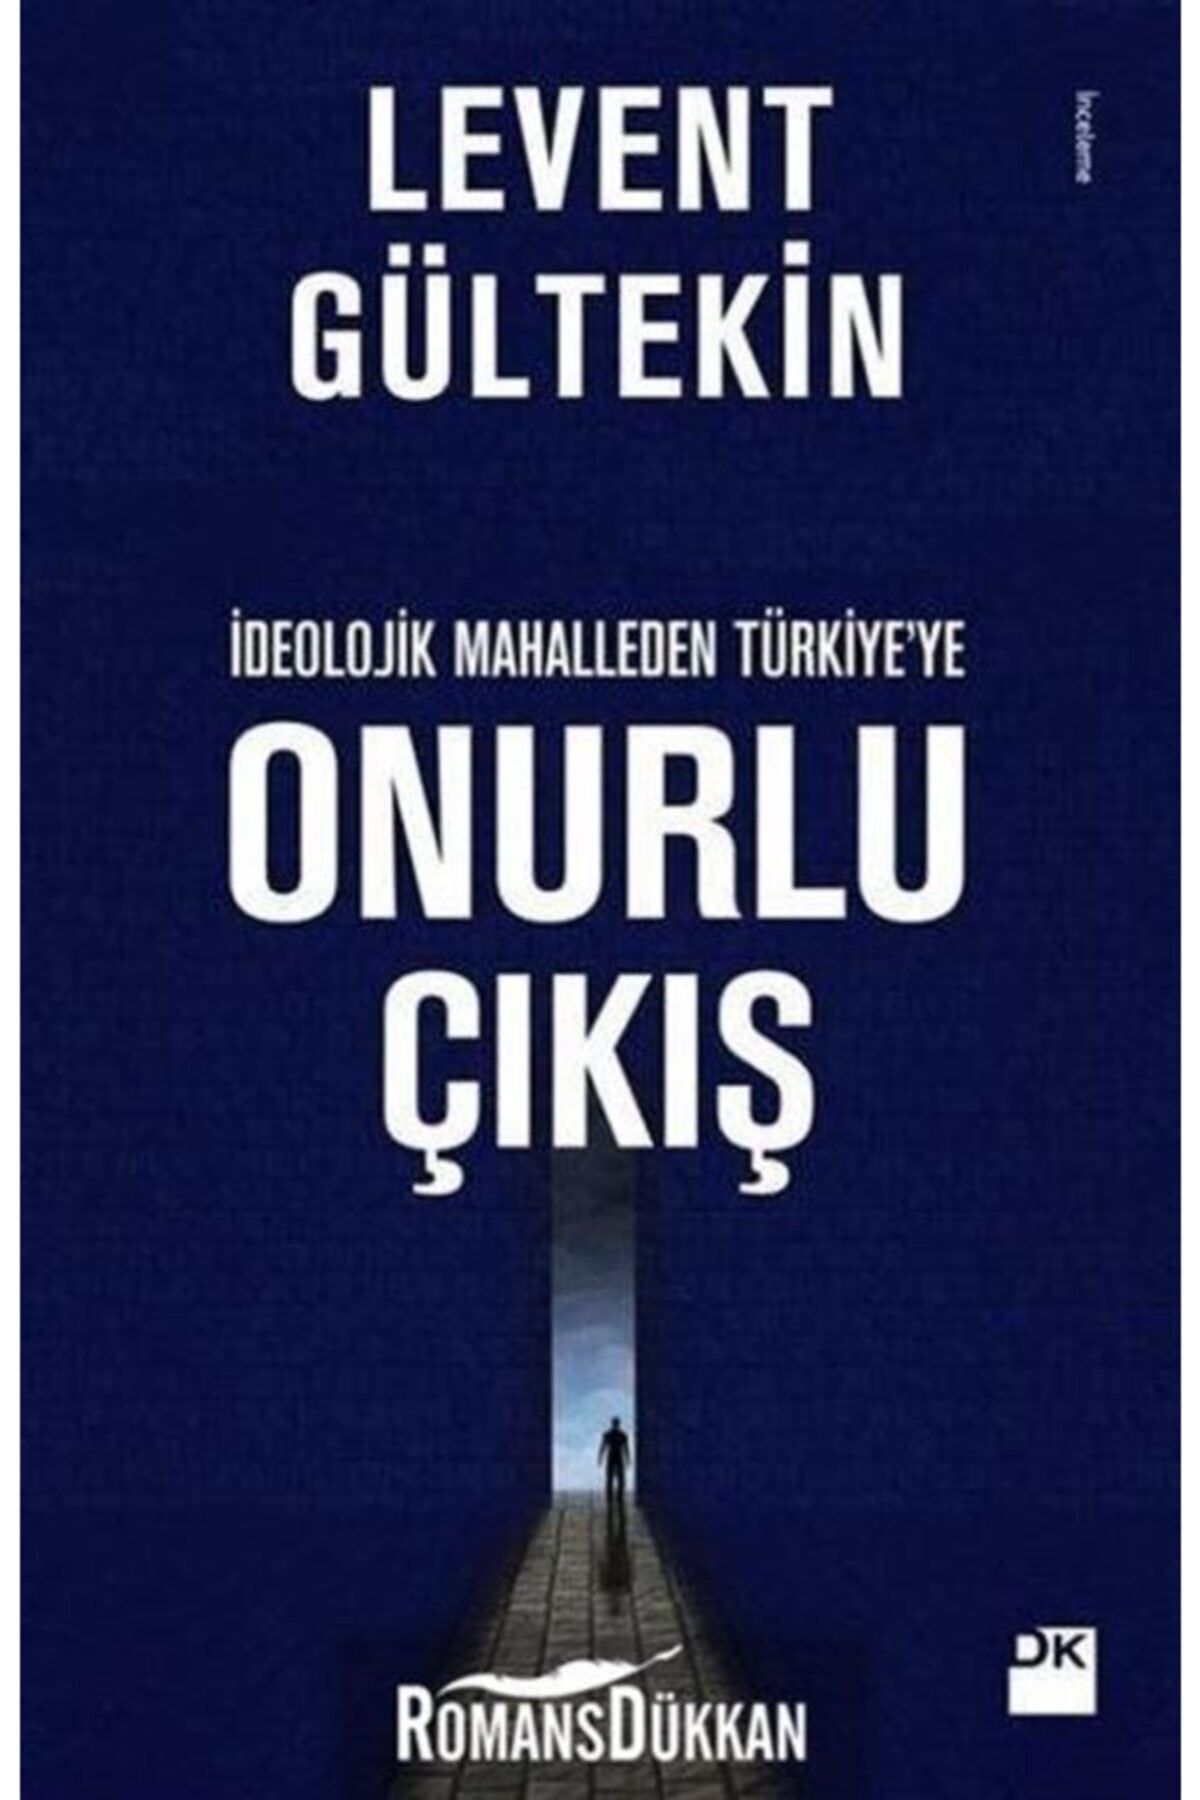 Doğan Kitap Onurlu Çıkış & Ideolojik Mahalleden Türkiye'ye